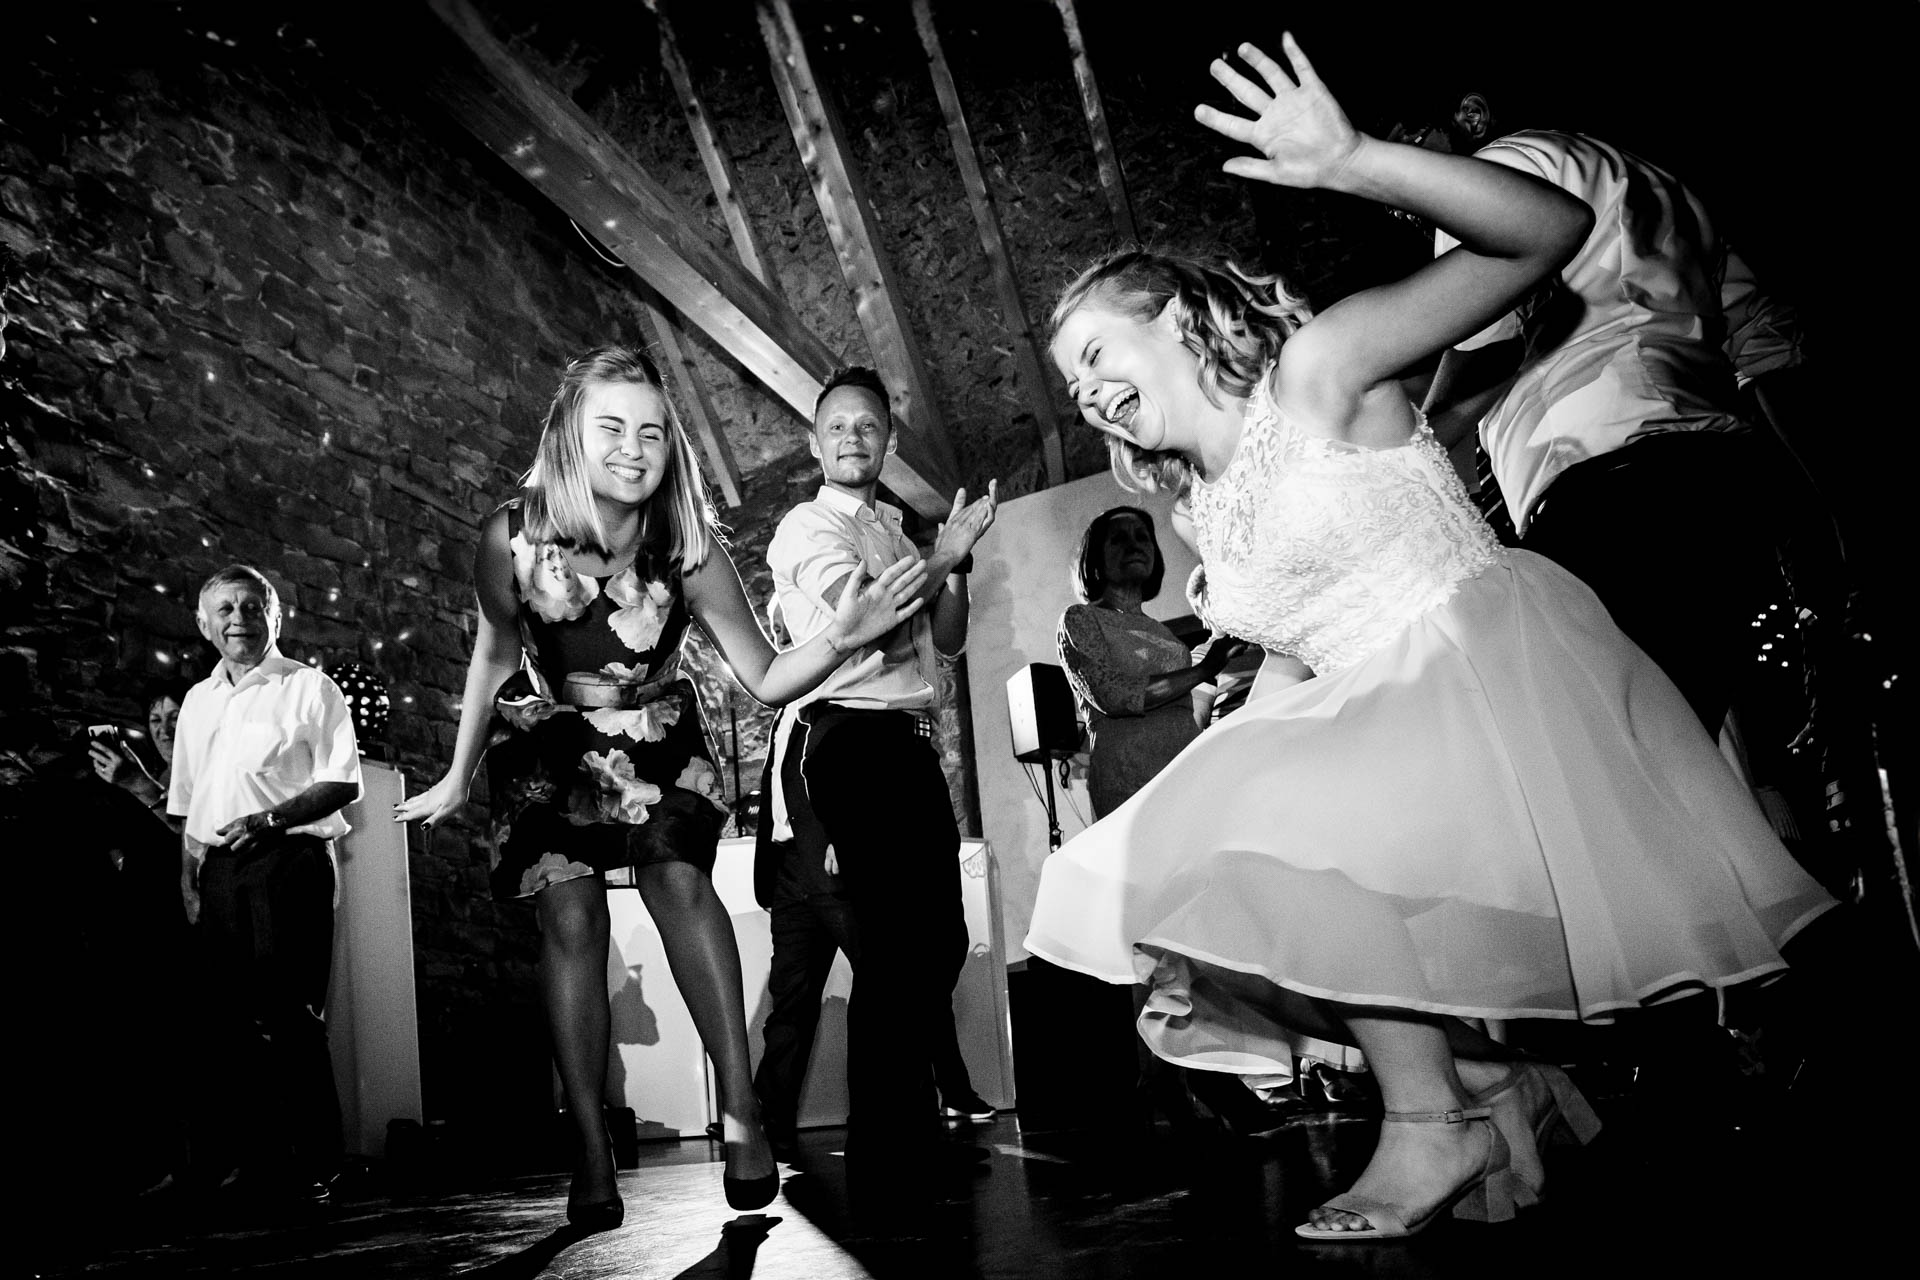 Glückliche Gäste auf der Tanzfläche: Lebendige Reportagefotografie, die die Begeisterung und das Tanzen der Hochzeitsgäste einfängt.